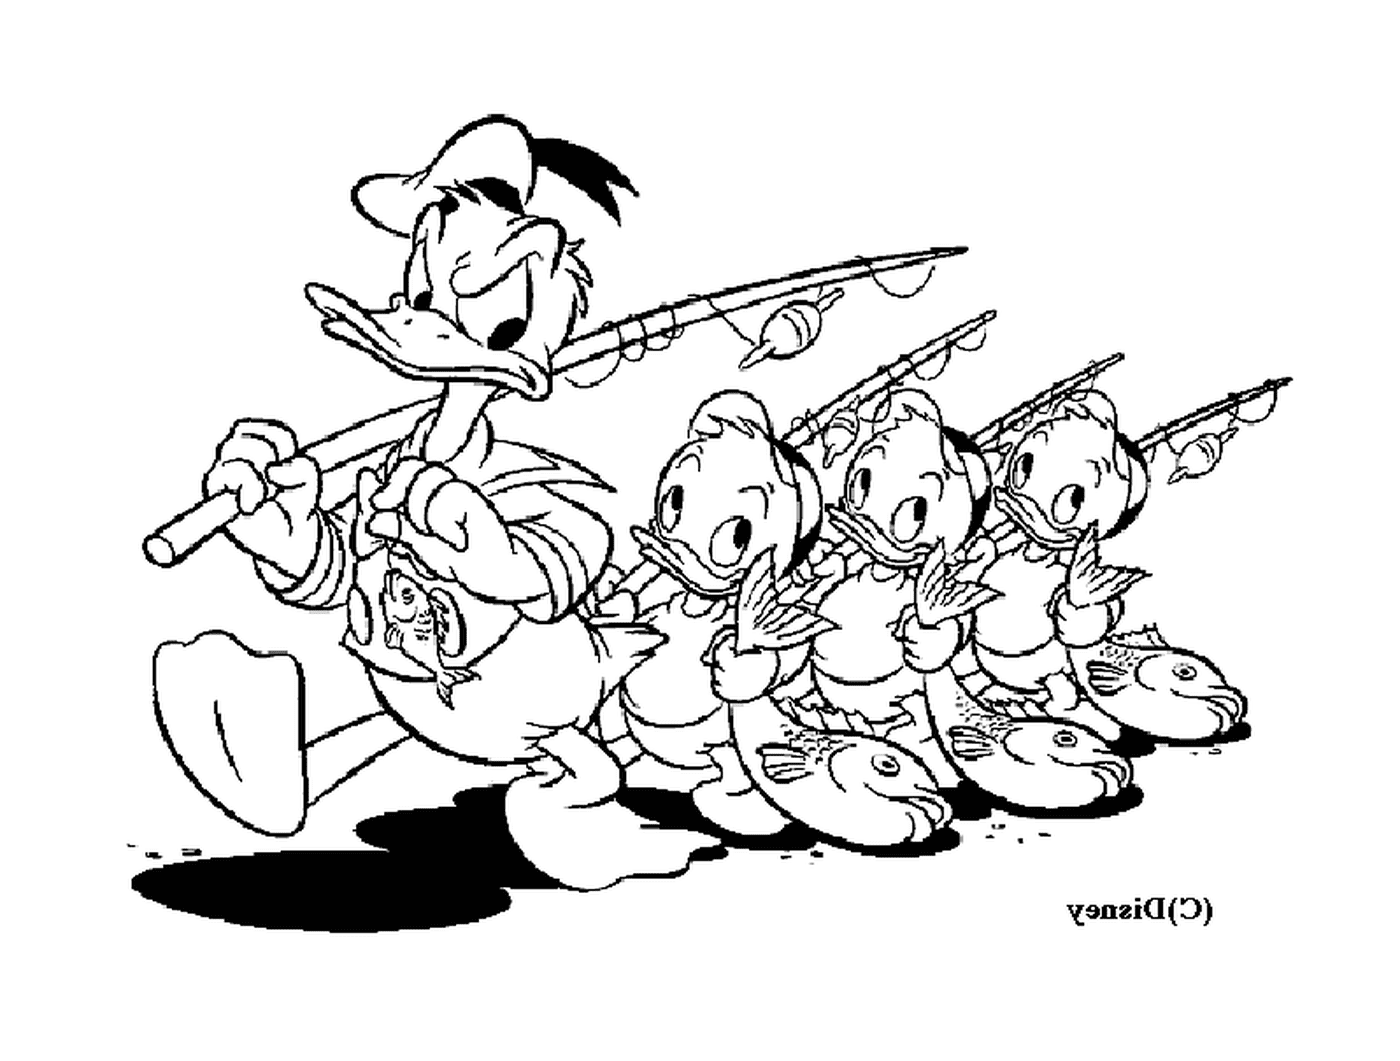  Donald y sus sobrinos pescan con alegría 